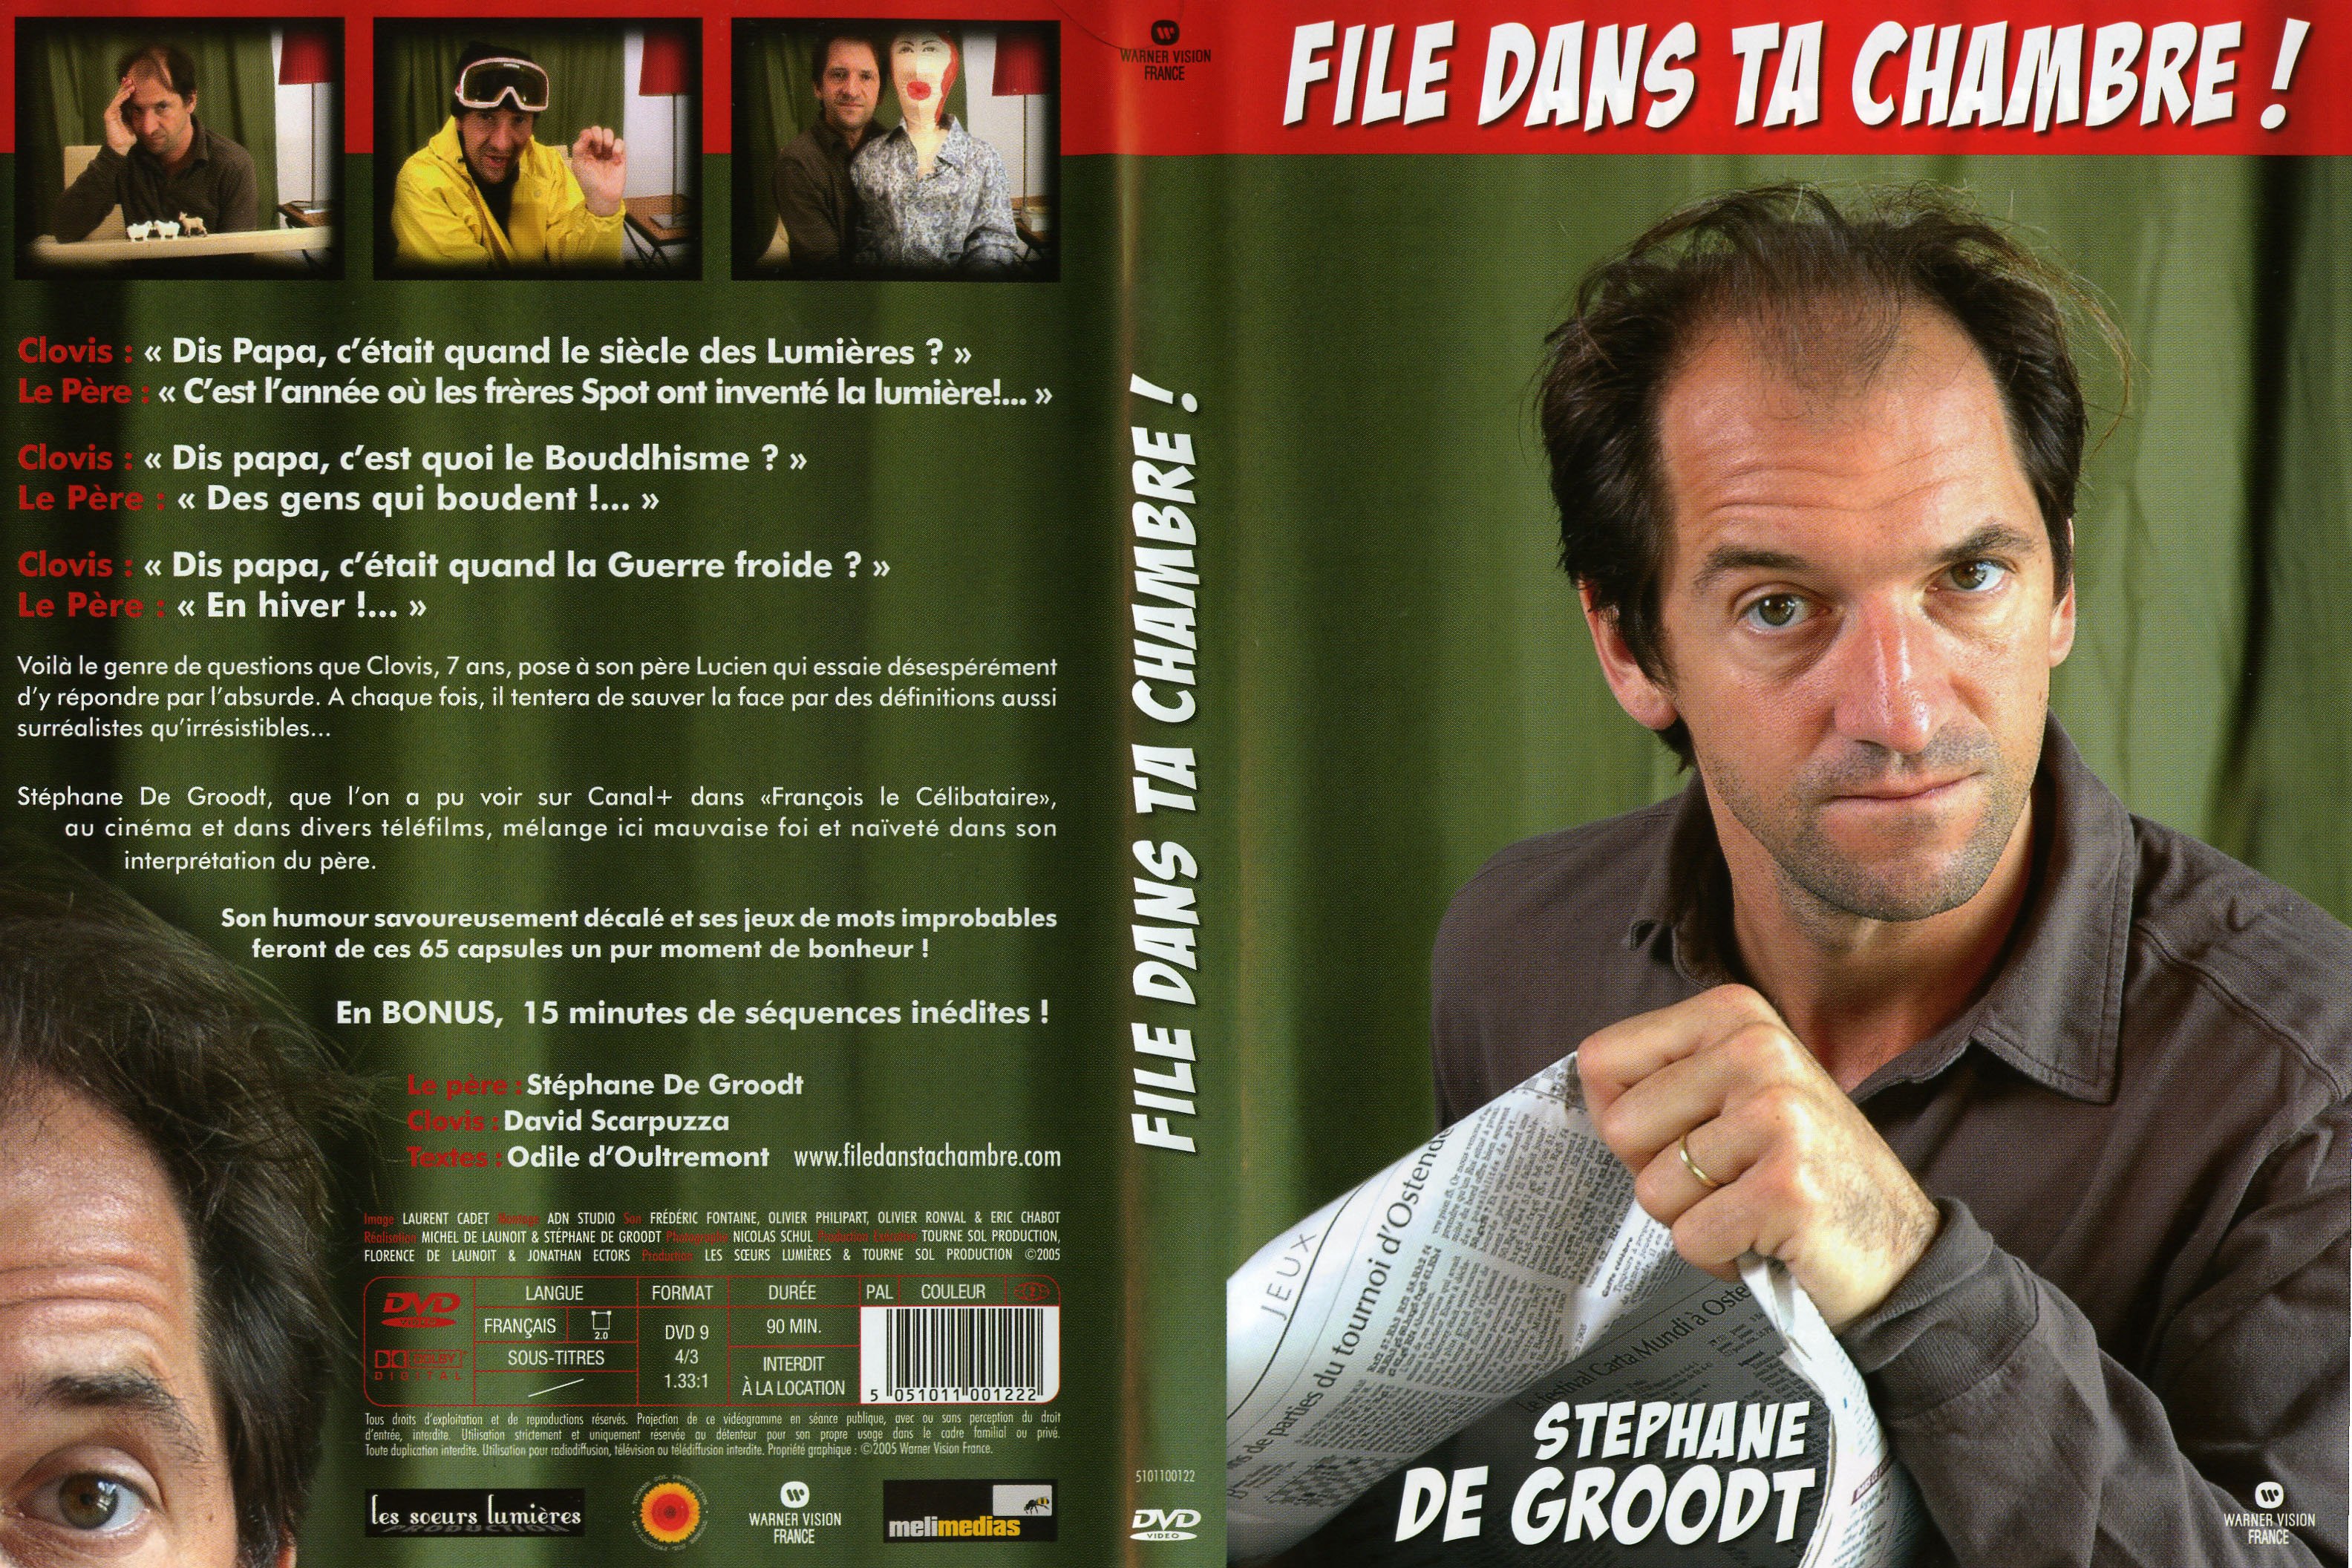 Jaquette DVD Stephane de Groodt File dans ta chambre